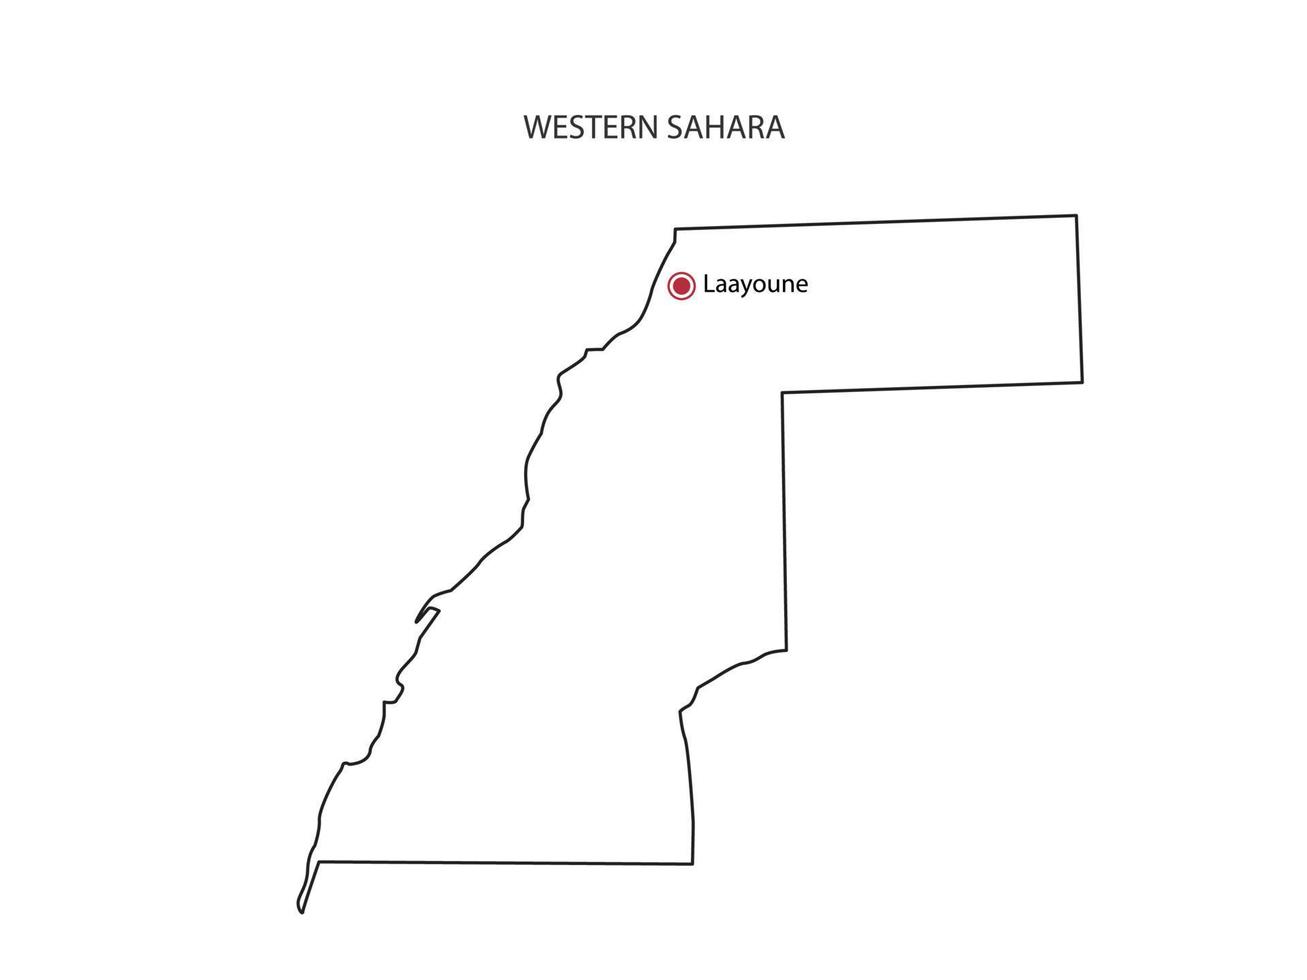 mão desenhar vetor de linha preta fina do mapa do Saara Ocidental com capital laayoune em fundo branco.